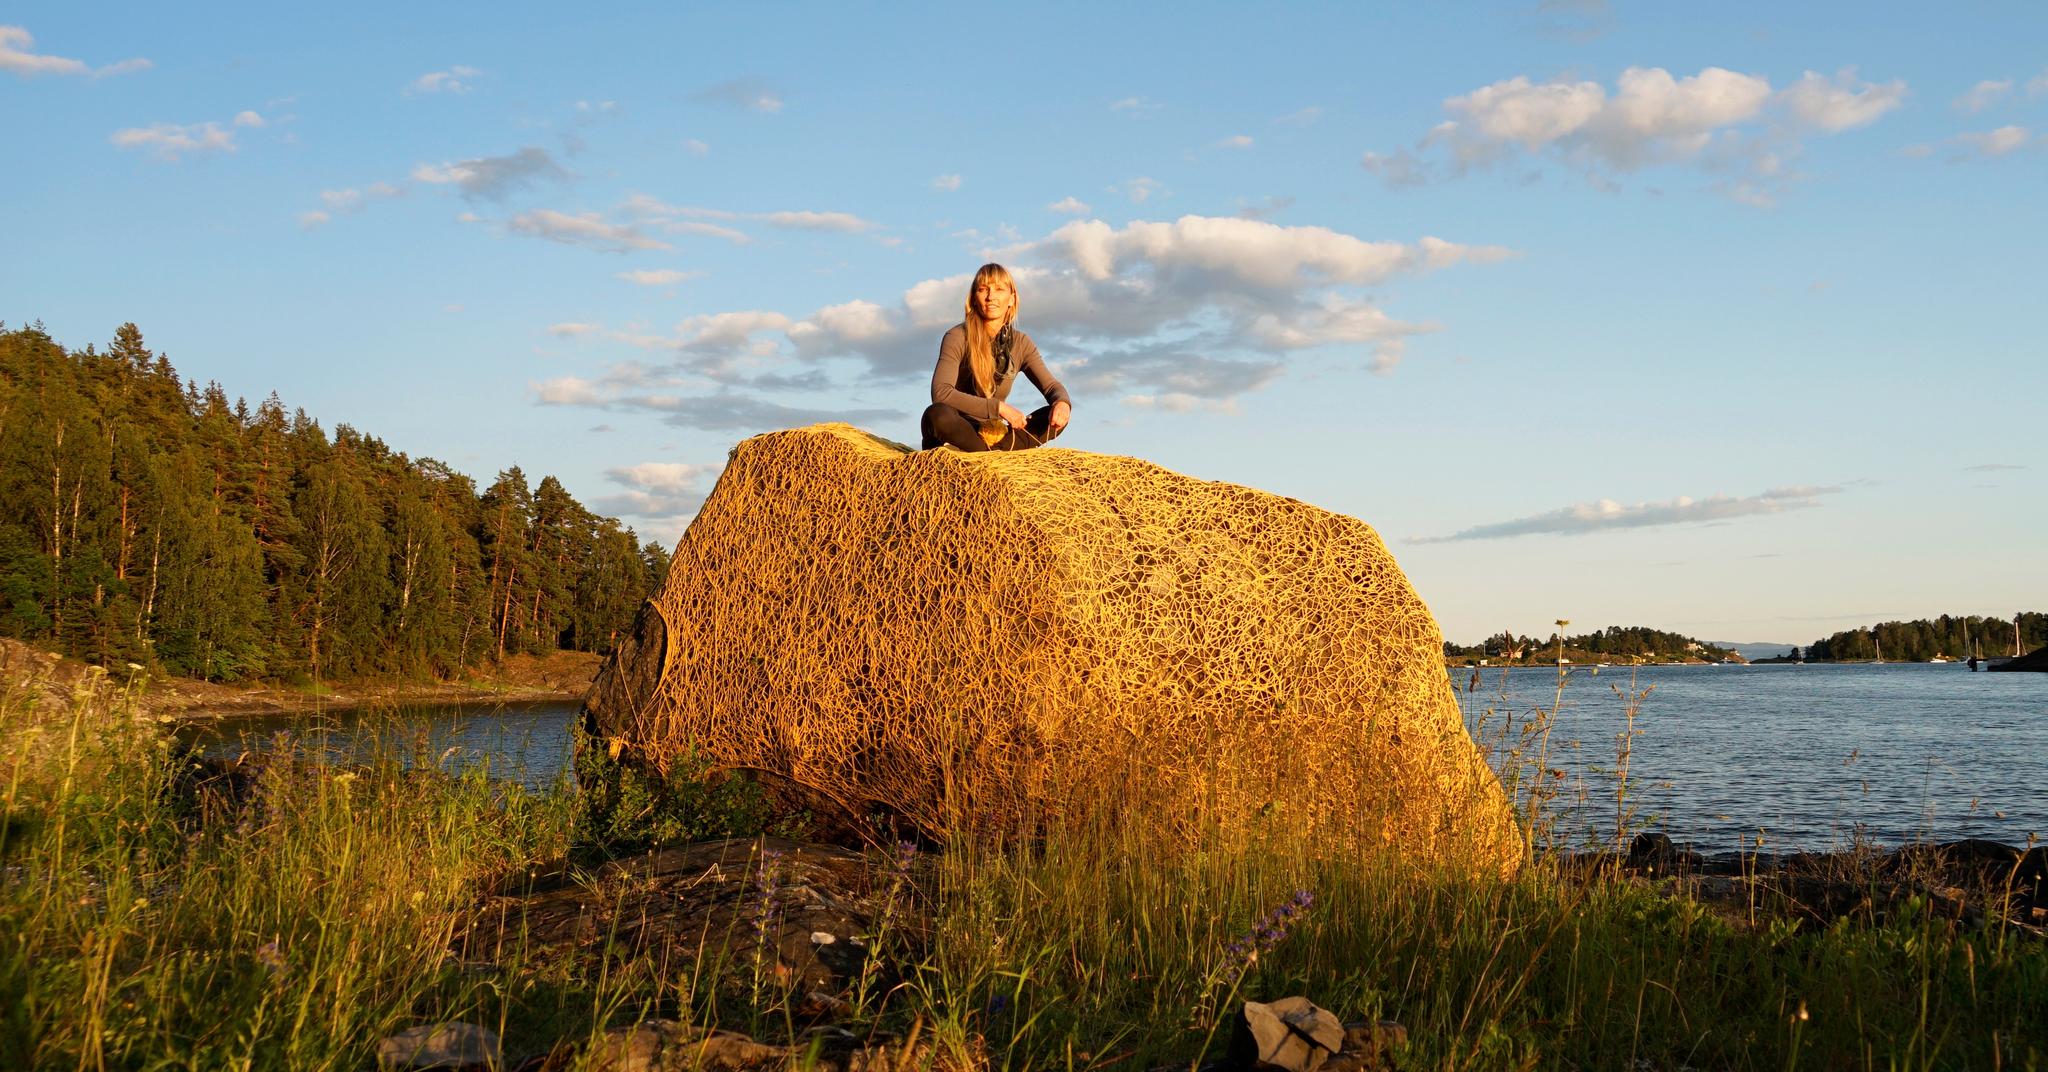 Kunstneren Lise Wulff har kledd inn den store steinen på Oustøya i Oslofjorden. – For meg handler verket om at vi må ta vare på naturen. Prosjektet knytter bånd mellom natur og kultur, mellom fortid og fremtid, sier Wulff.